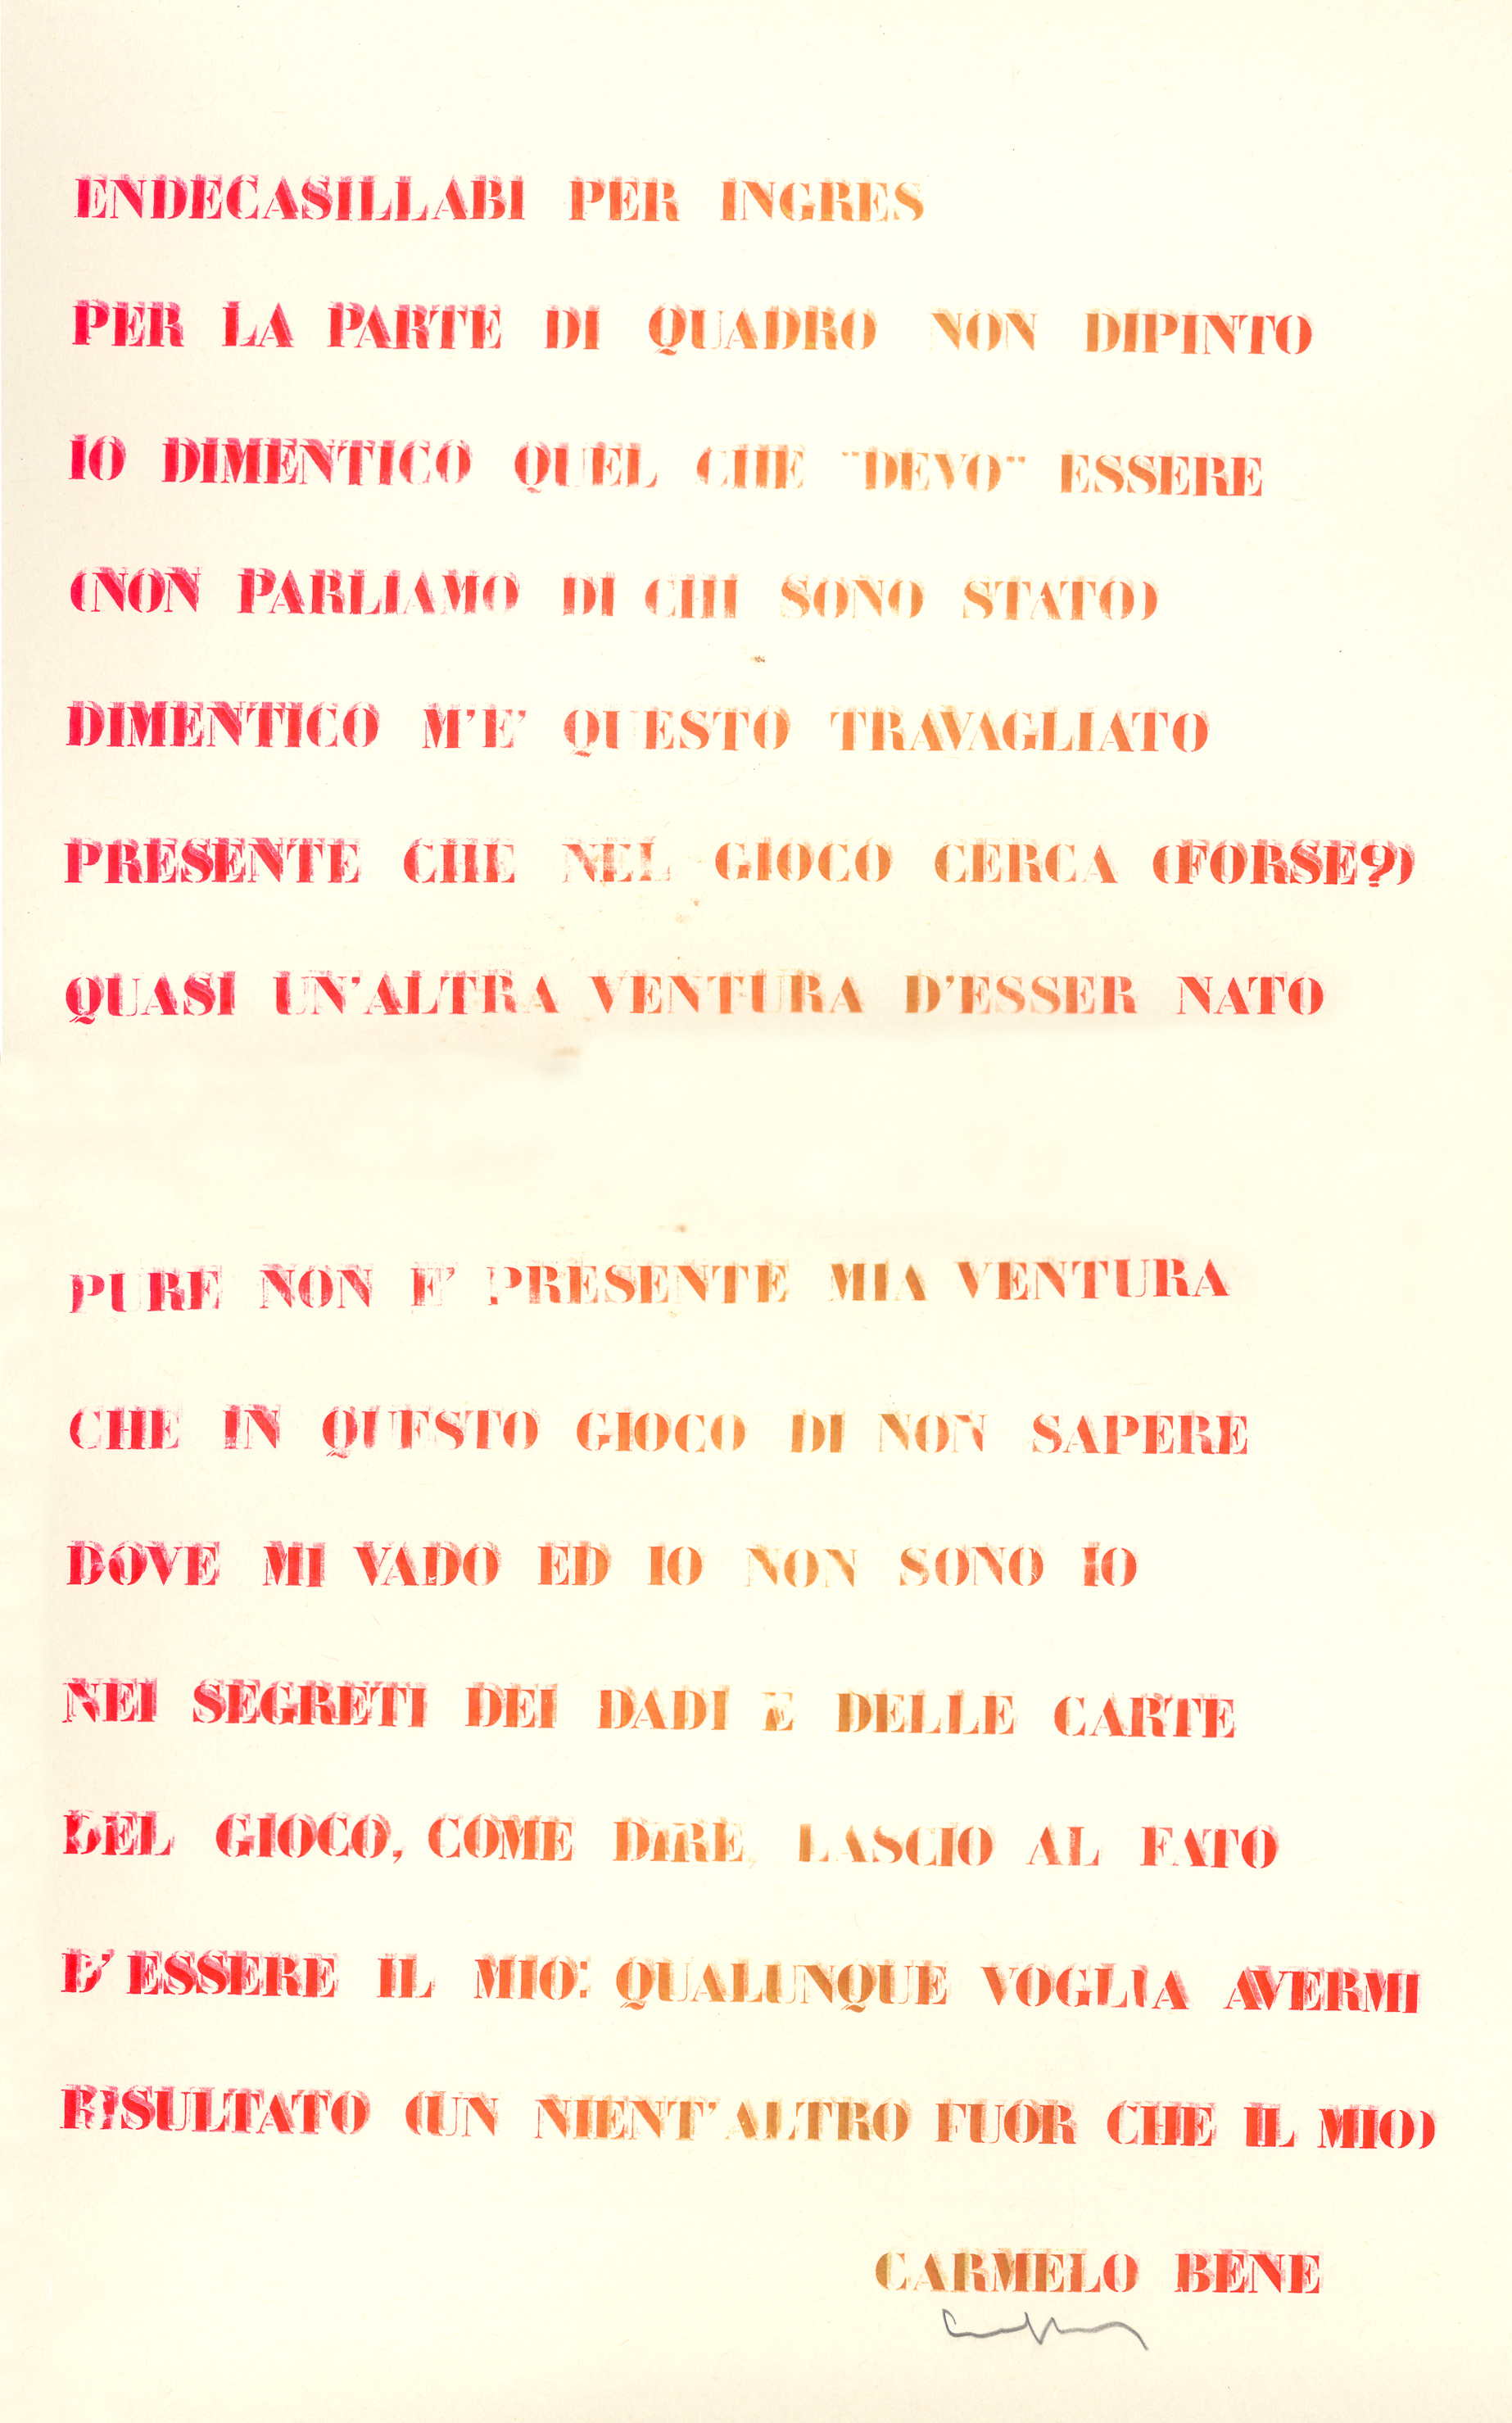 CarmeloBene_Endecasillabi per Ingres_serigrafia di vari colori su carta_50 x 70 cm_1972_hi